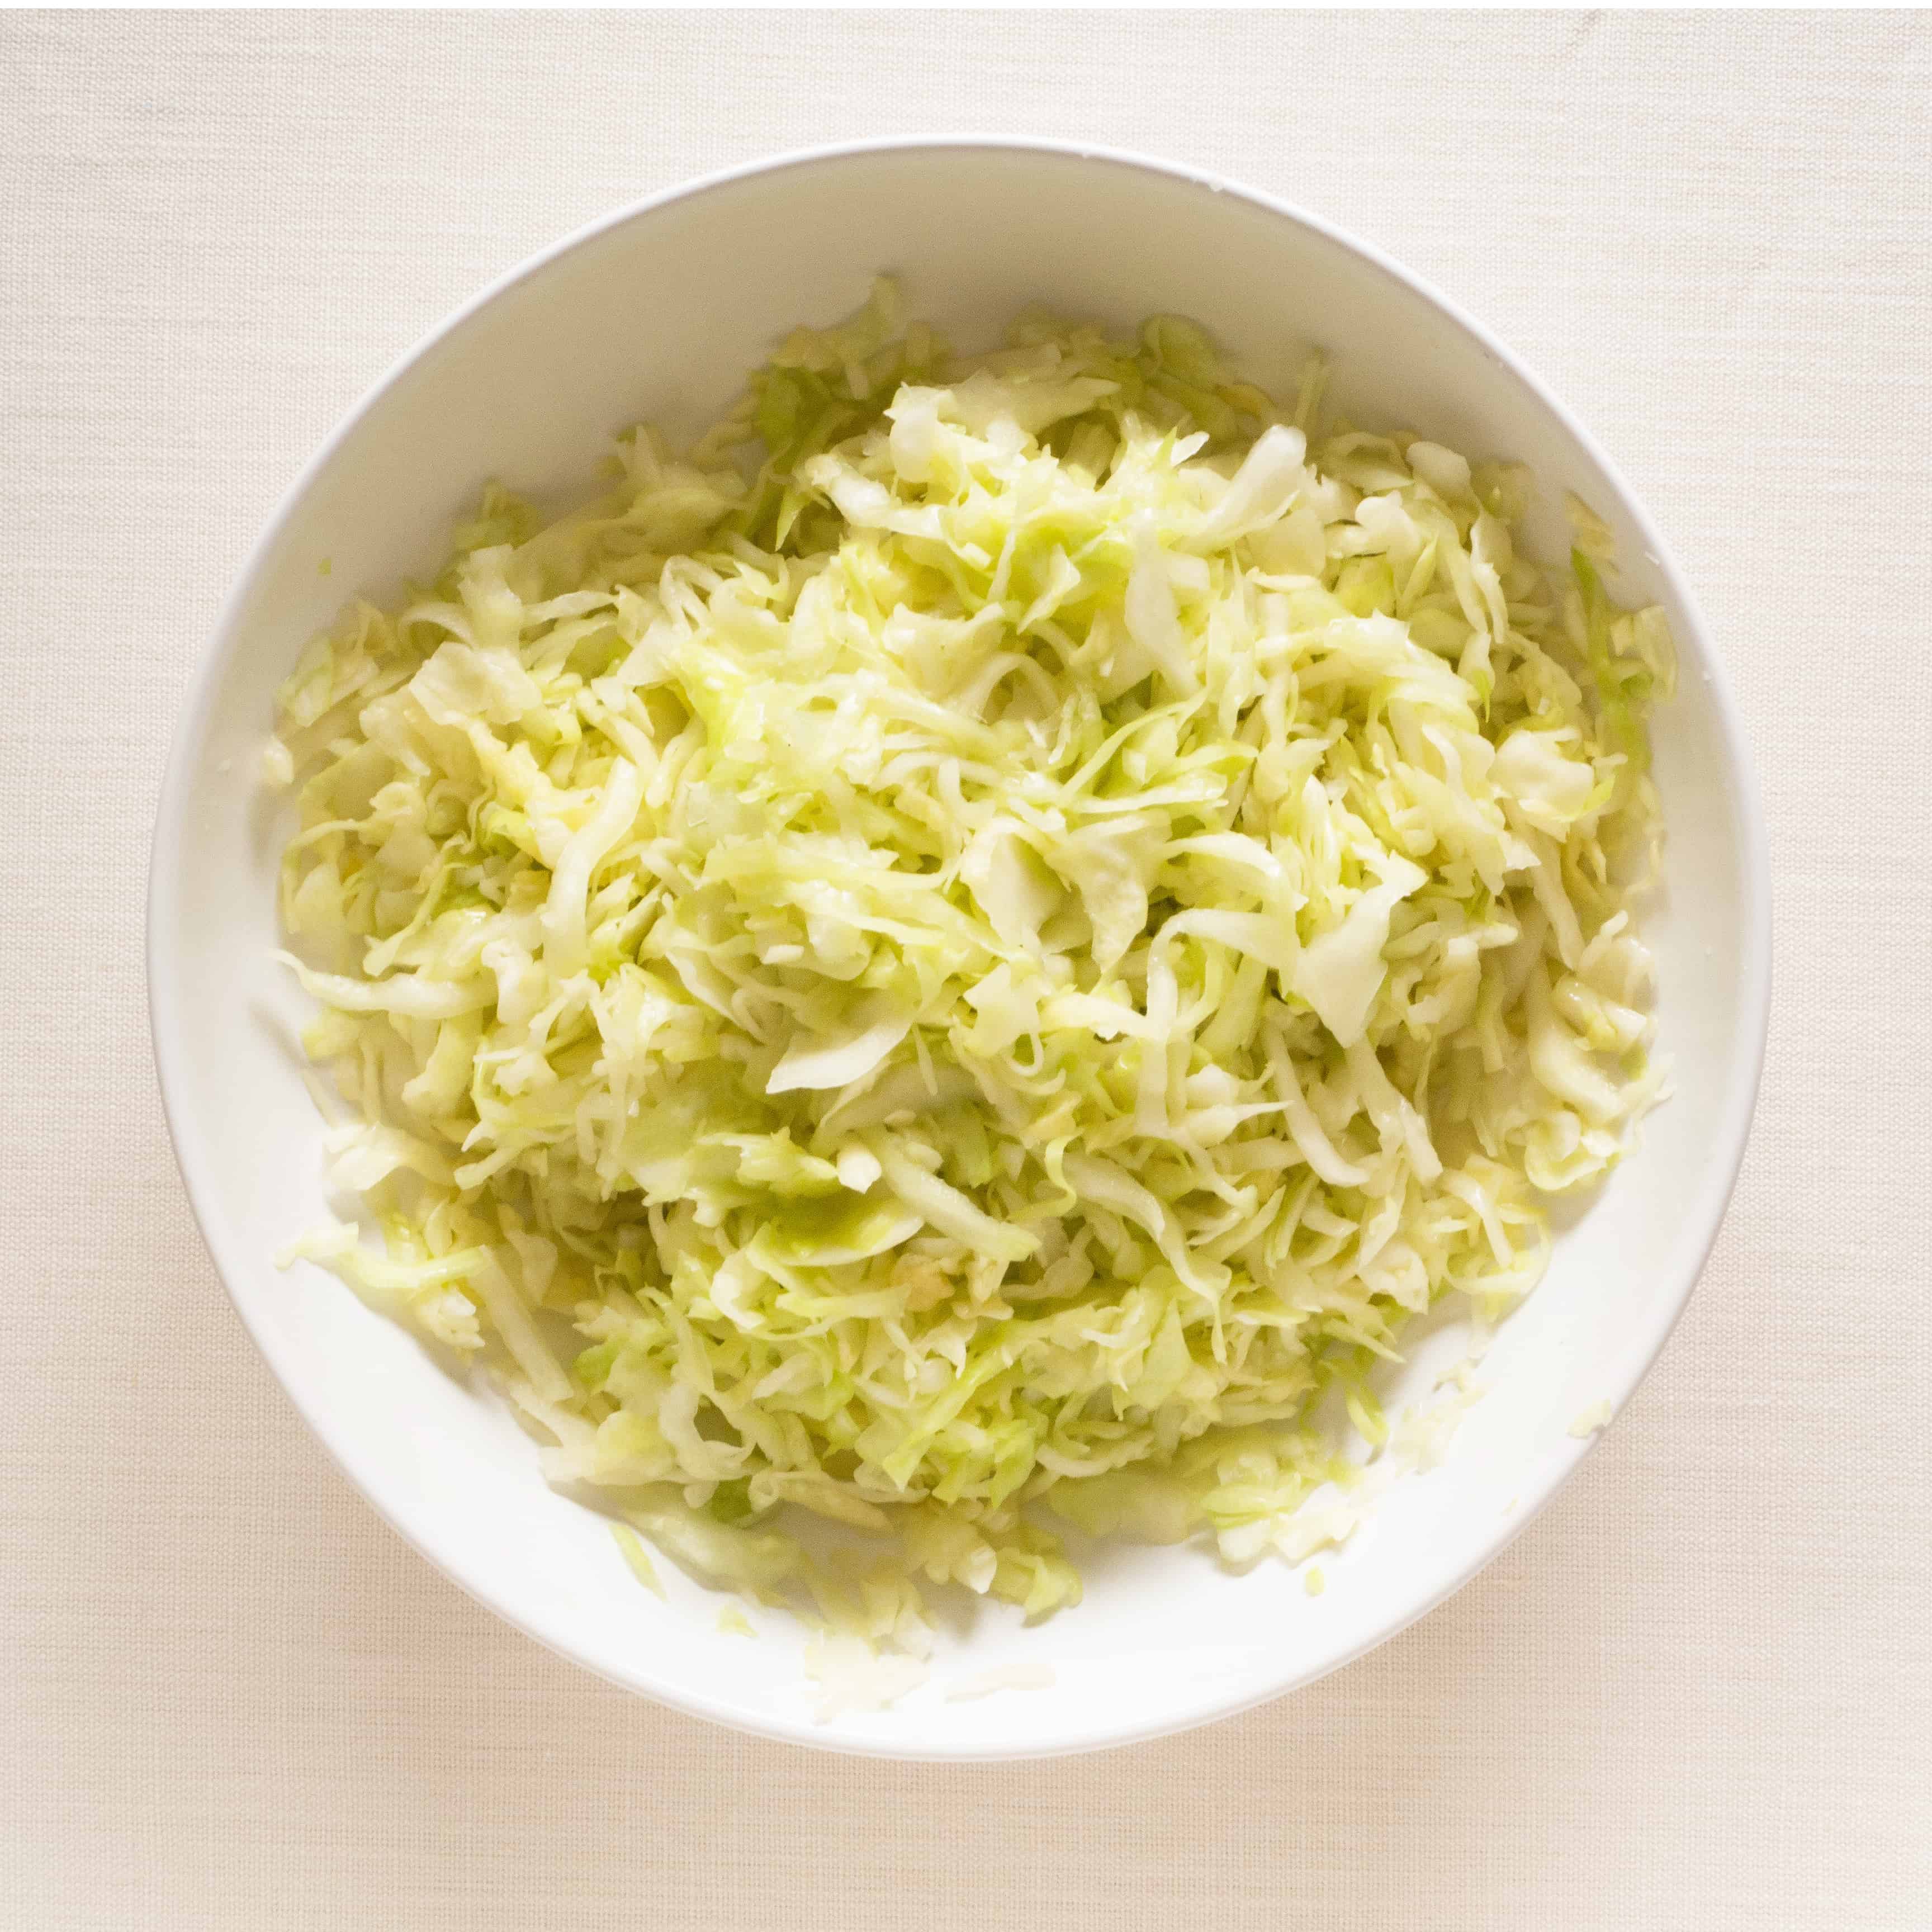 Gluten free, vegan sauerkraut - shredded cabbage